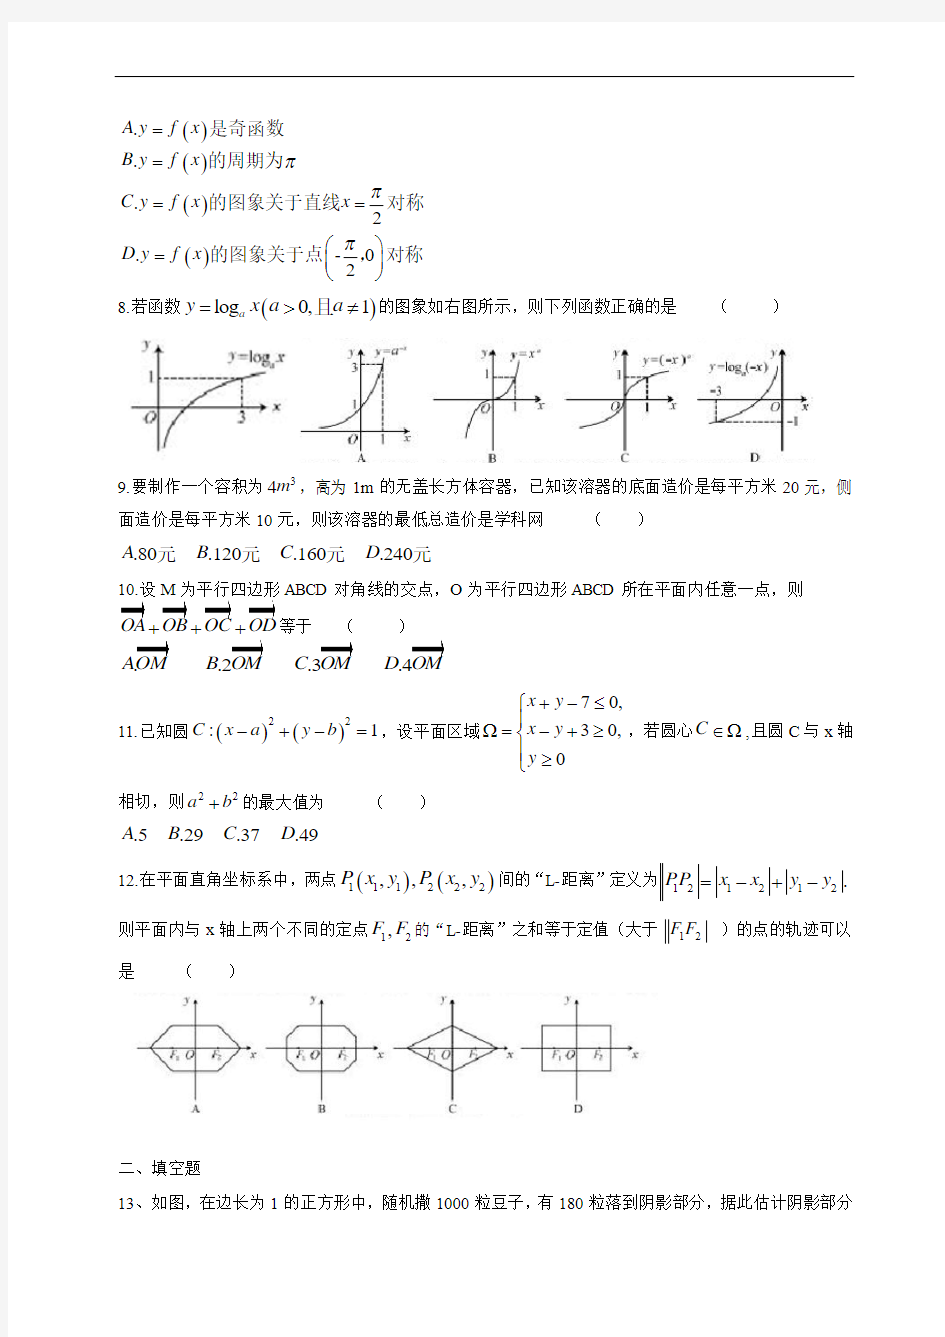 (福建省)2014年高考真题数学(文)试题